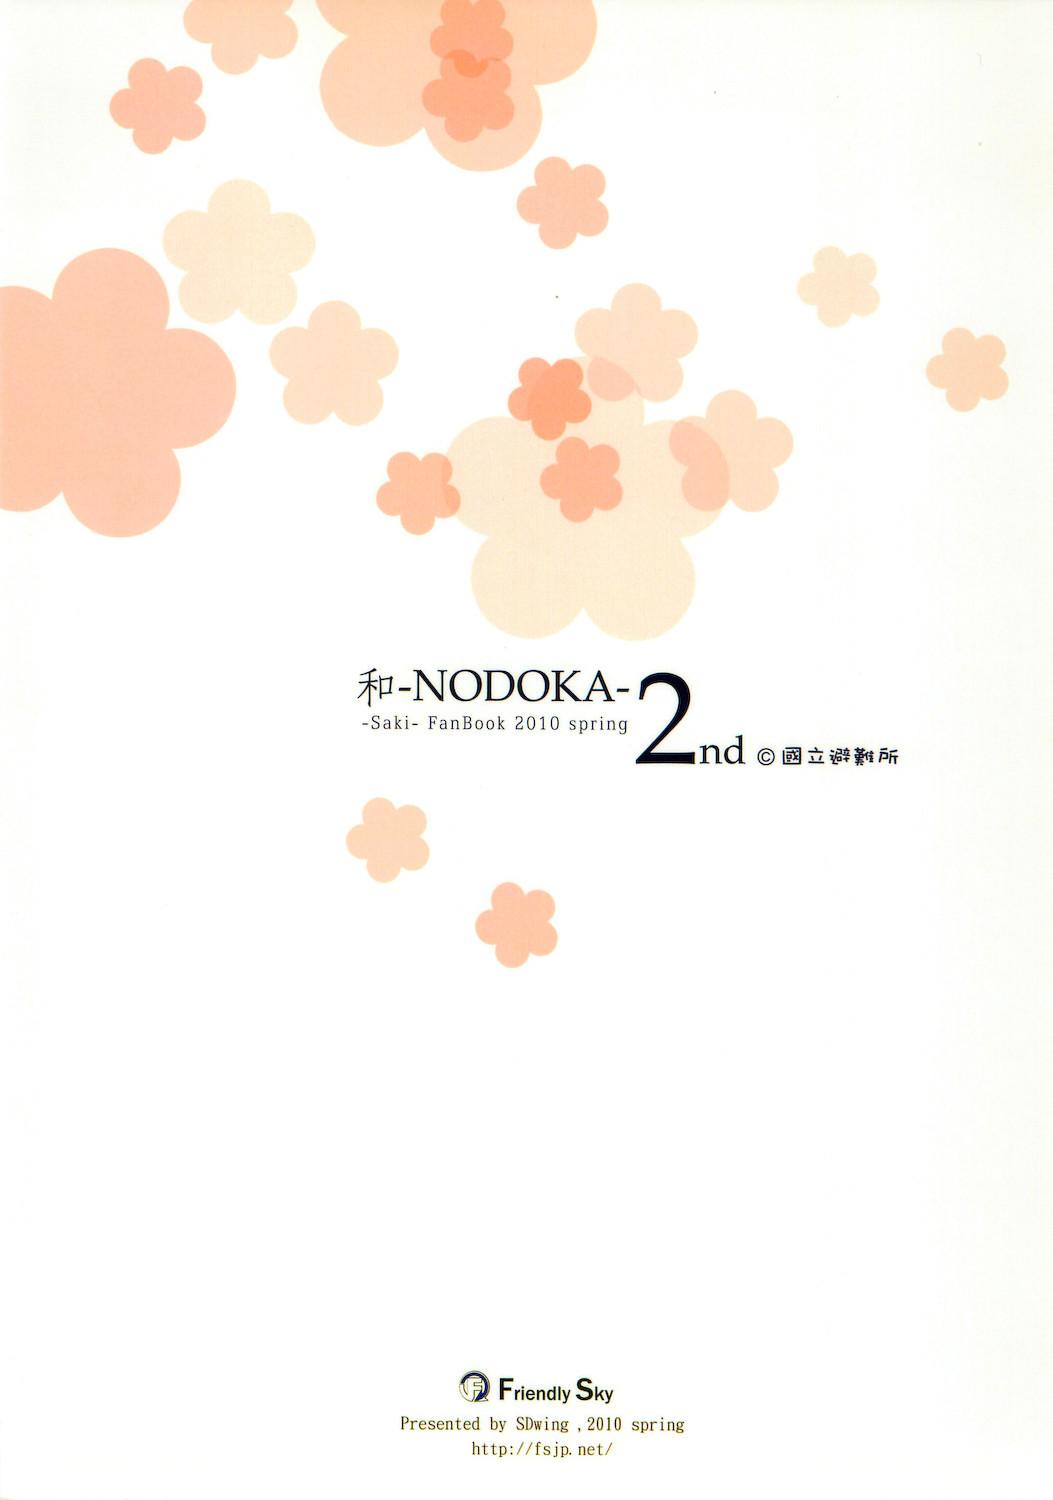 (COMIC1☆4) [Friendly Sky, Kokuritsu Hinanjyo (SDwing)] Wa-NODOKA- 2nd (Saki) 23